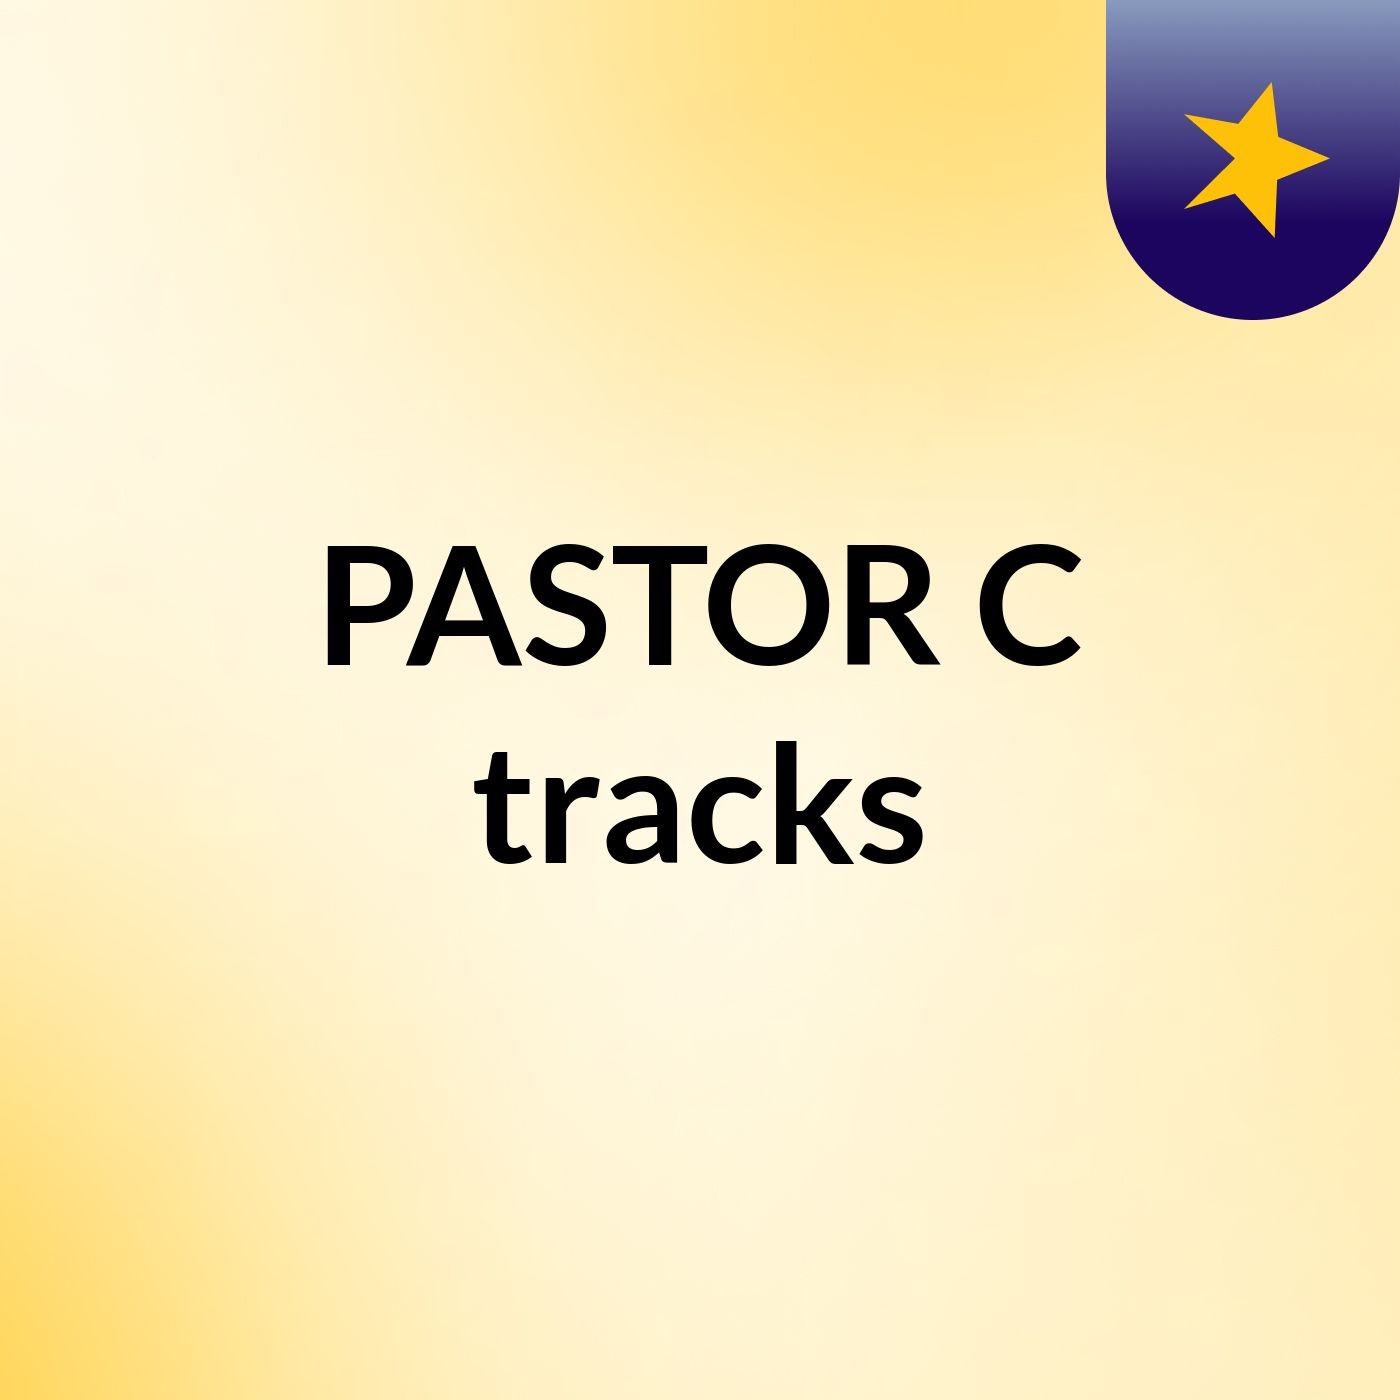 PASTOR C tracks